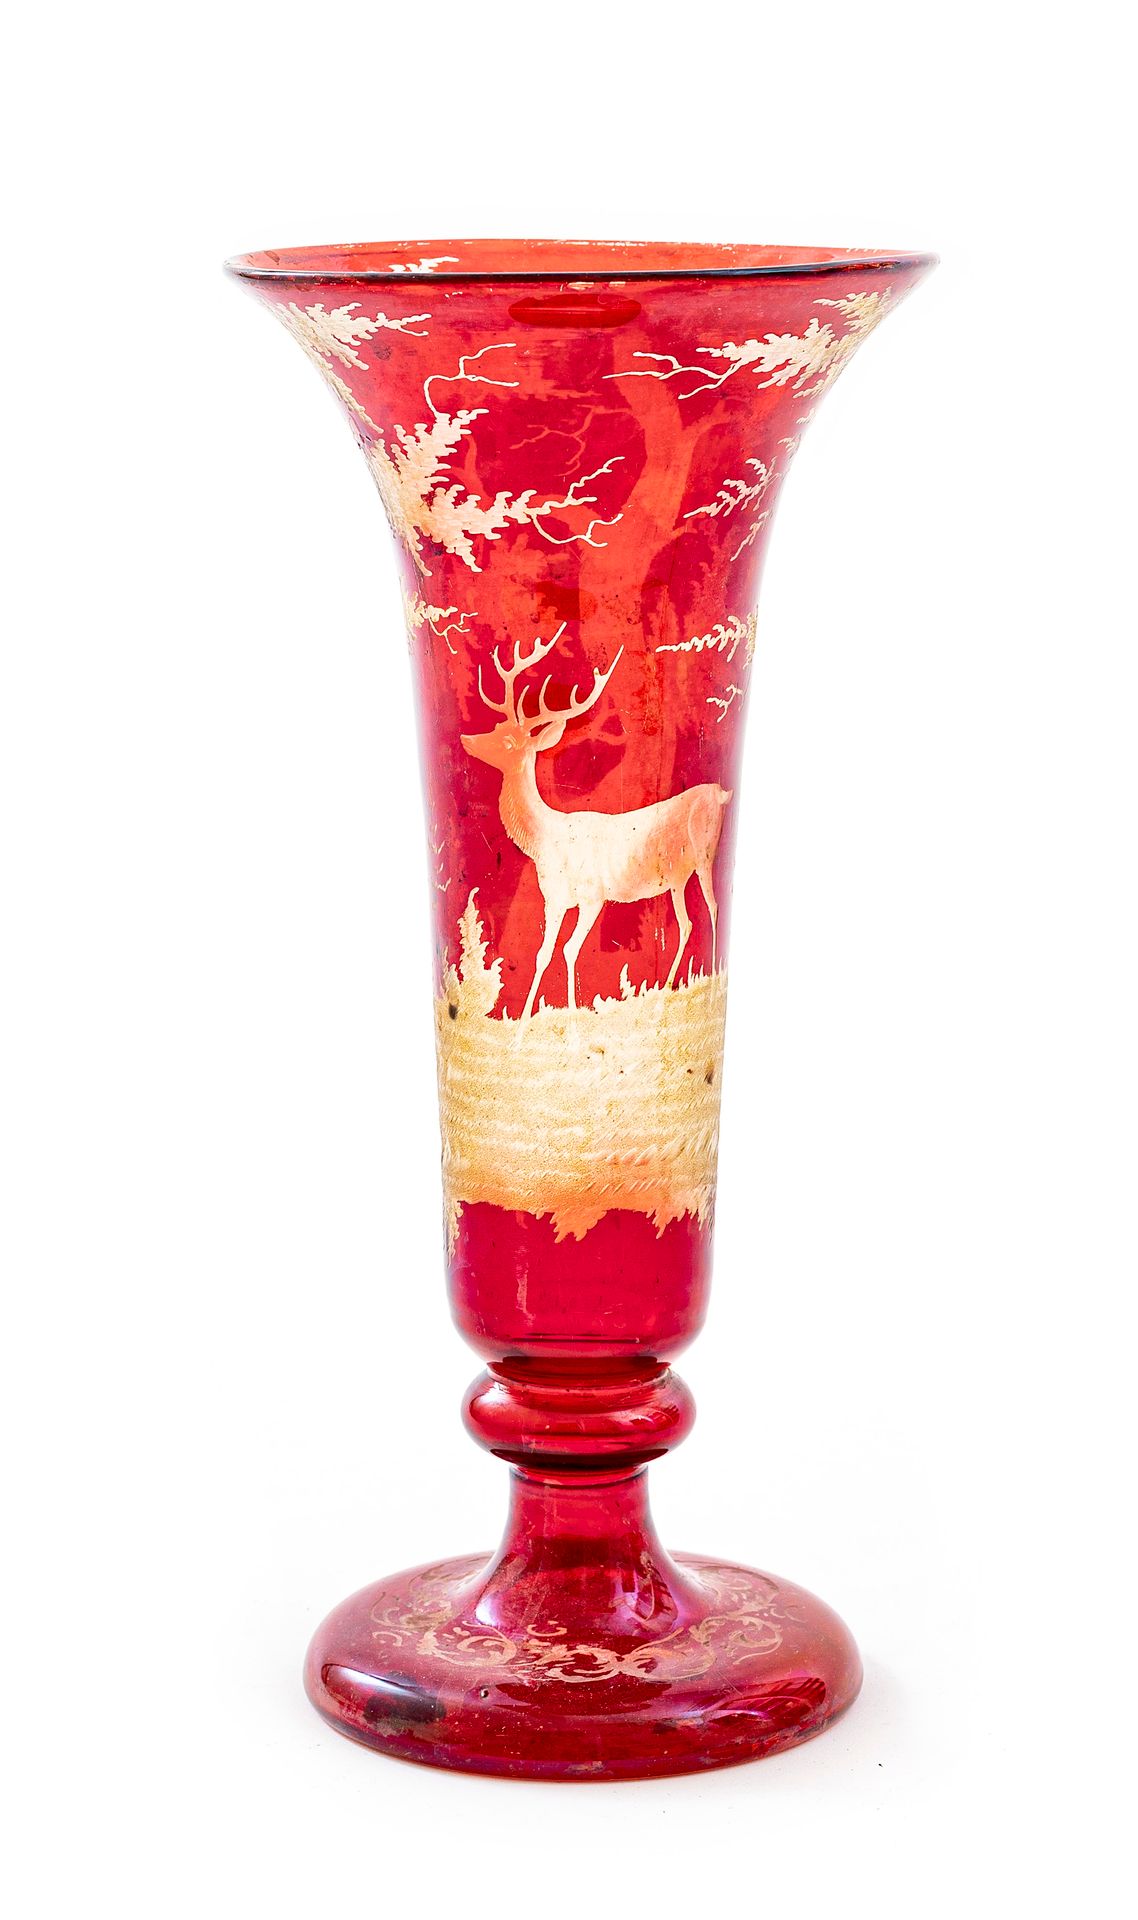 Null 波西米亚风格的水晶花瓶，基座上有一个深浅不一的红色外翻颈部

纹饰刻有两棵橡树之间的草地上的雄鹿车轮，底面装饰有叶子楣。

19世纪的作品

高度：3&hellip;